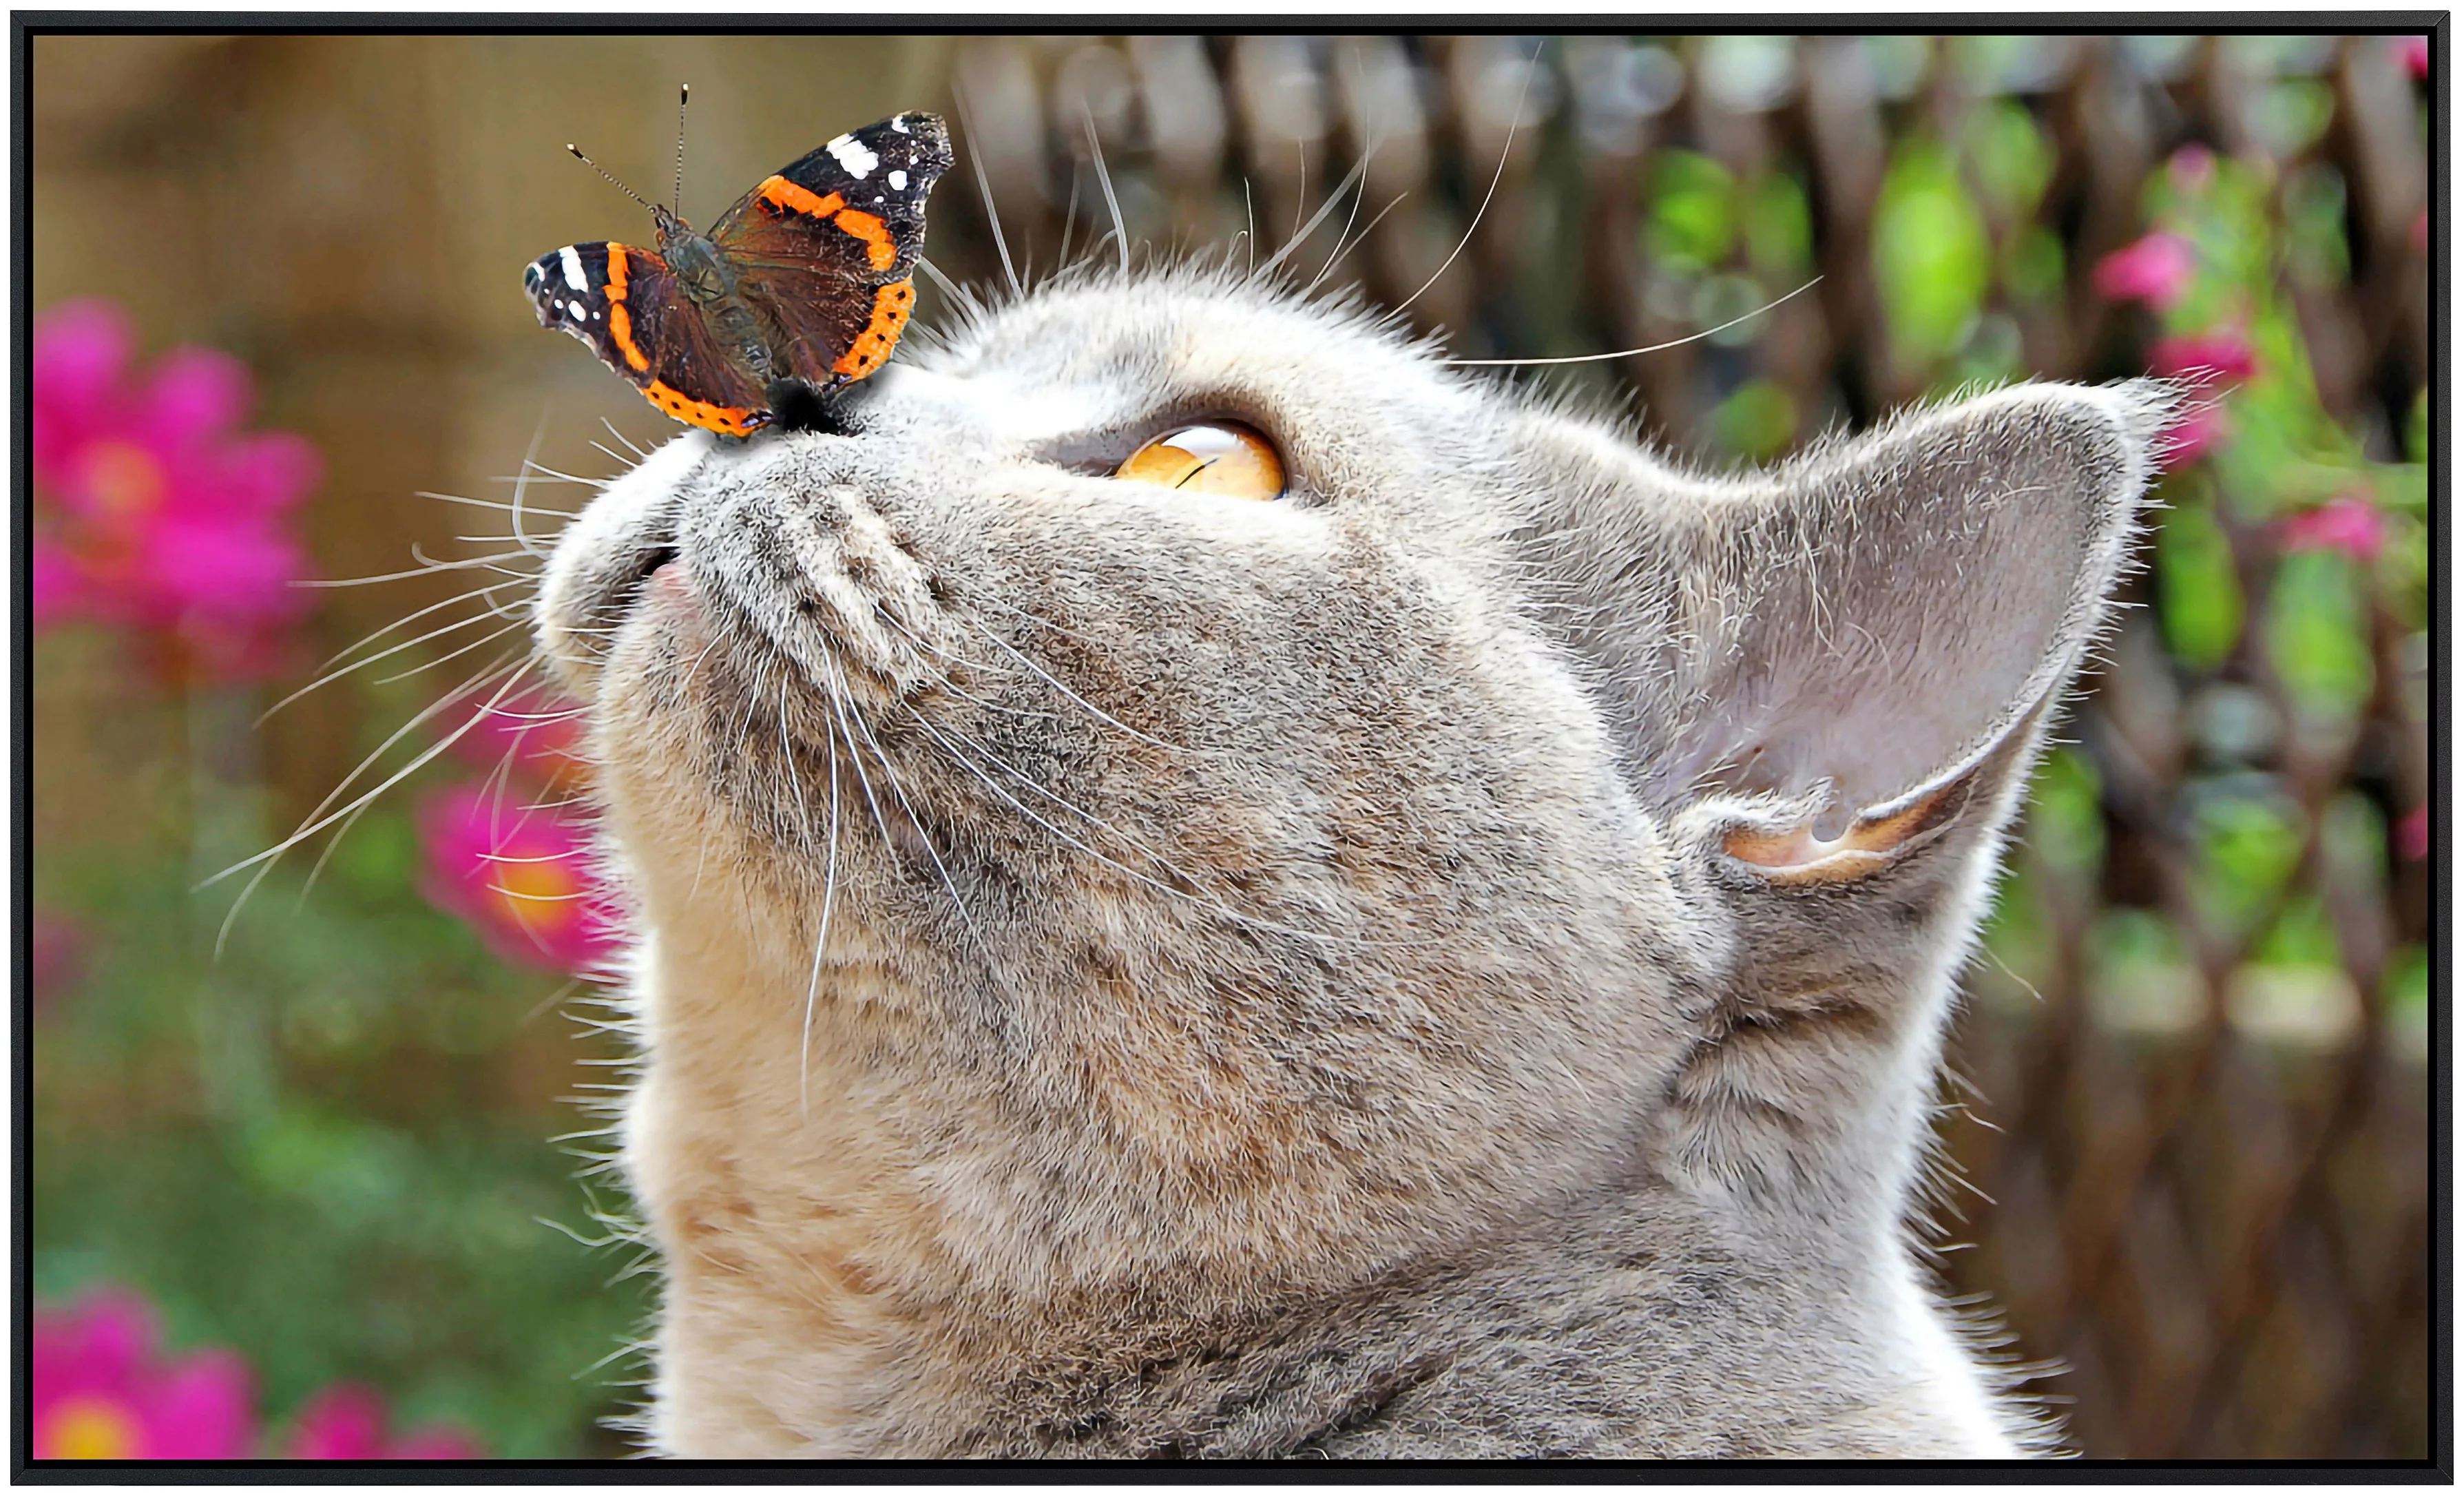 Papermoon Infrarotheizung »Schmetterling und Katze«, sehr angenehme Strahlu günstig online kaufen